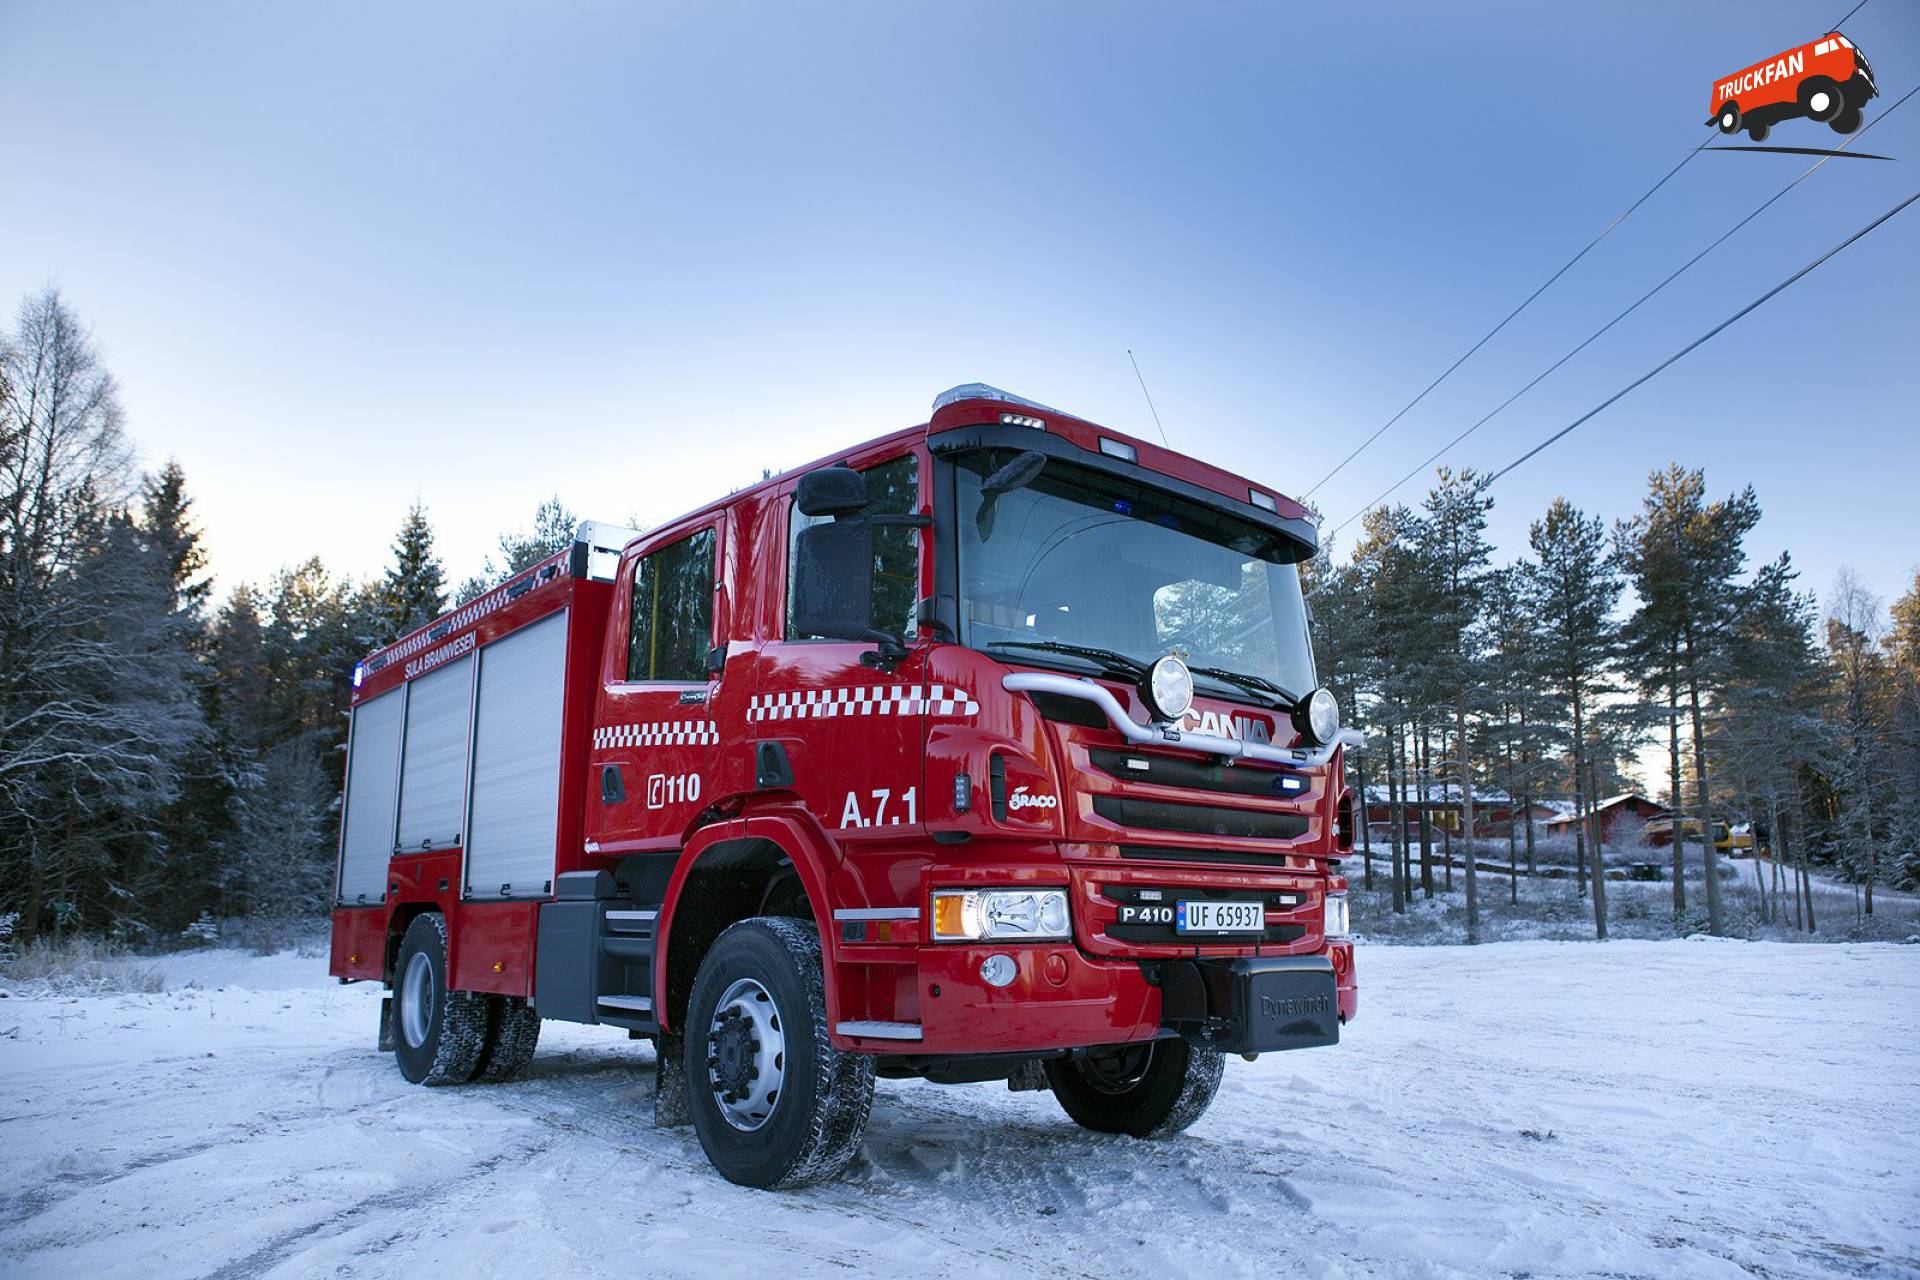 Scania P410 Sula Op woensdag 17 december 2014 hebben Ziegler Brandweertechniek & Braco een nieuwe tankautospuit afgeleverd aan de brandweer van Sula in Noorwegen. Op woensdag 17 december 2014 hebben Ziegler Brandweertechniek & Braco een nieuwe tankautospuit afgeleverd aan de brandweer van Sula in Noorwegen. Op woensdag 17 december 2014 hebben Ziegler Brandweertechniek & Braco een nieuwe tankautospuit afgeleverd aan de brandweer van in Noorwegen. Op woensdag 17 december 2014 hebben Ziegler Brandweertechniek & Braco een nieuwe tankautospuit afgeleverd aan de brandweer van Sula in Noorwegen. Op woensdag 17 december 2014 hebben Ziegler Brandweertechniek & Braco een nieuwe tankautospuit afgeleverd aan de brandweer van in Noorwegen. Op woensdag 17 december 2014 hebben Ziegler Brandweertechniek & Braco een nieuwe tankautospuit afgeleverd aan de brandweer van Sula in Noorwegen. Op woensdag 17 december 2014 hebben Ziegler Brandweertechniek & Braco een nieuwe tankautospuit afgeleverd aan de brandweer van  in Noorwegen. Op woensdag 17 december 2014 hebben Ziegler Brandweertechniek & Braco een nieuwe tankautospuit afgeleverd aan de brandweer van in Noorwegen. Op woensdag 17 december 2014 hebben Ziegler Brandweertechniek & Braco een nieuwe tankautospuit afgeleverd aan de brandweer van Sula in Noorwegen. Op woensdag 17 december 2014 hebben Ziegler Brandweertechniek & Braco een nieuwe tankautospuit afgeleverd aan de brandweer van Sula in Noorwegen. Op woensdag 17 december 2014 hebben Ziegler Brandweertechniek & Braco een nieuwe tankautospuit afgeleverd aan de brandweer van Sula in Noorwegen. Op woensdag 17 december 2014 hebben Ziegler Brandweertechniek & Braco een nieuwe tankautospuit afgeleverd aan de brandweer van Sula in Noorwegen. Op woensdag 17 december 2014 hebben Ziegler Brandweertechniek & Braco een nieuwe tankautospuit afgeleverd aan de brandweer van Sula in Noorwegen. Op woensdag 17 december 2014 hebben Ziegler Brandweertechniek & Braco een nieuwe tankautospuit afgeleverd aan de brandweer van Sula in Noorwegen. Op woensdag 17 december 2014 hebben Ziegler Brandweertechniek & Braco een nieuwe tankautospuit afgeleverd aan de brandweer van Sula in Noorwegen. Op woensdag 17 december 2014 hebben Ziegler Brandweertechniek & Braco een nieuwe tankautospuit afgeleverd aan de brandweer van Sula in Noorwegen. 